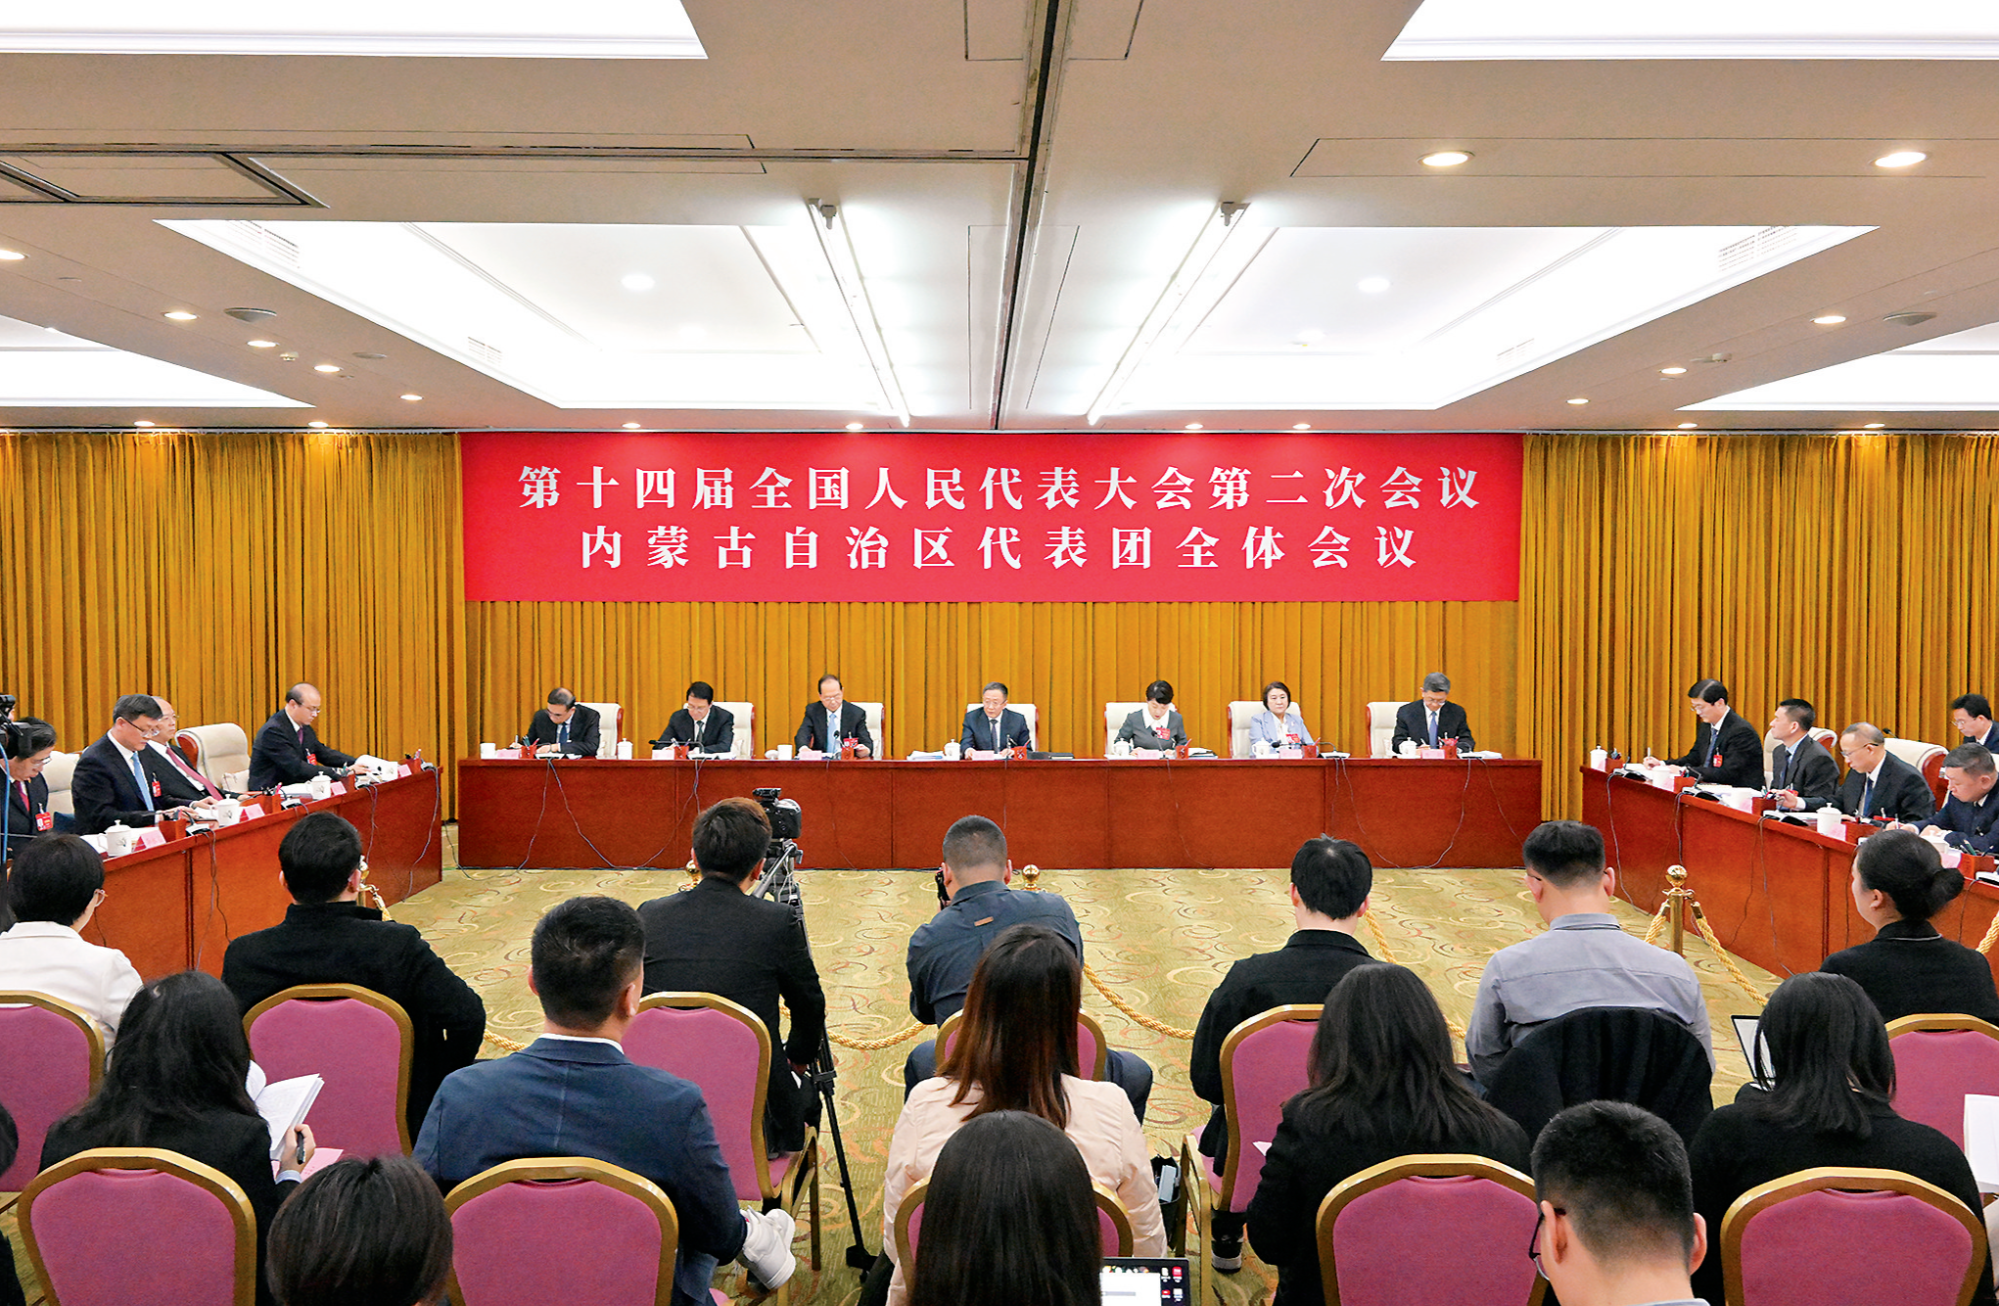 内蒙古代表团举行开放团组活动